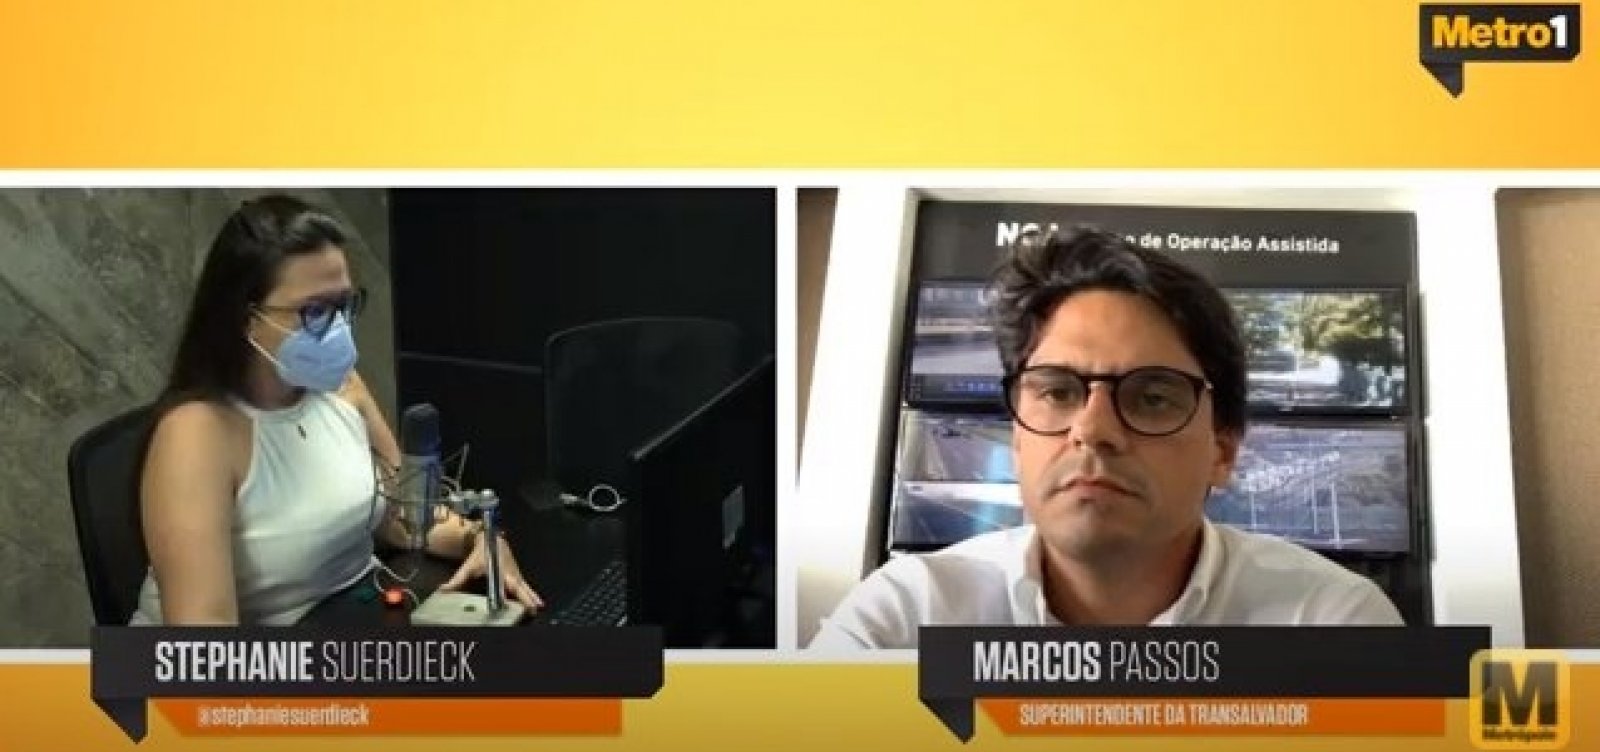 Marcos Passos conta sobre nova gestão à frente da Transalvador em entrevista ao Metrópole Serviço 